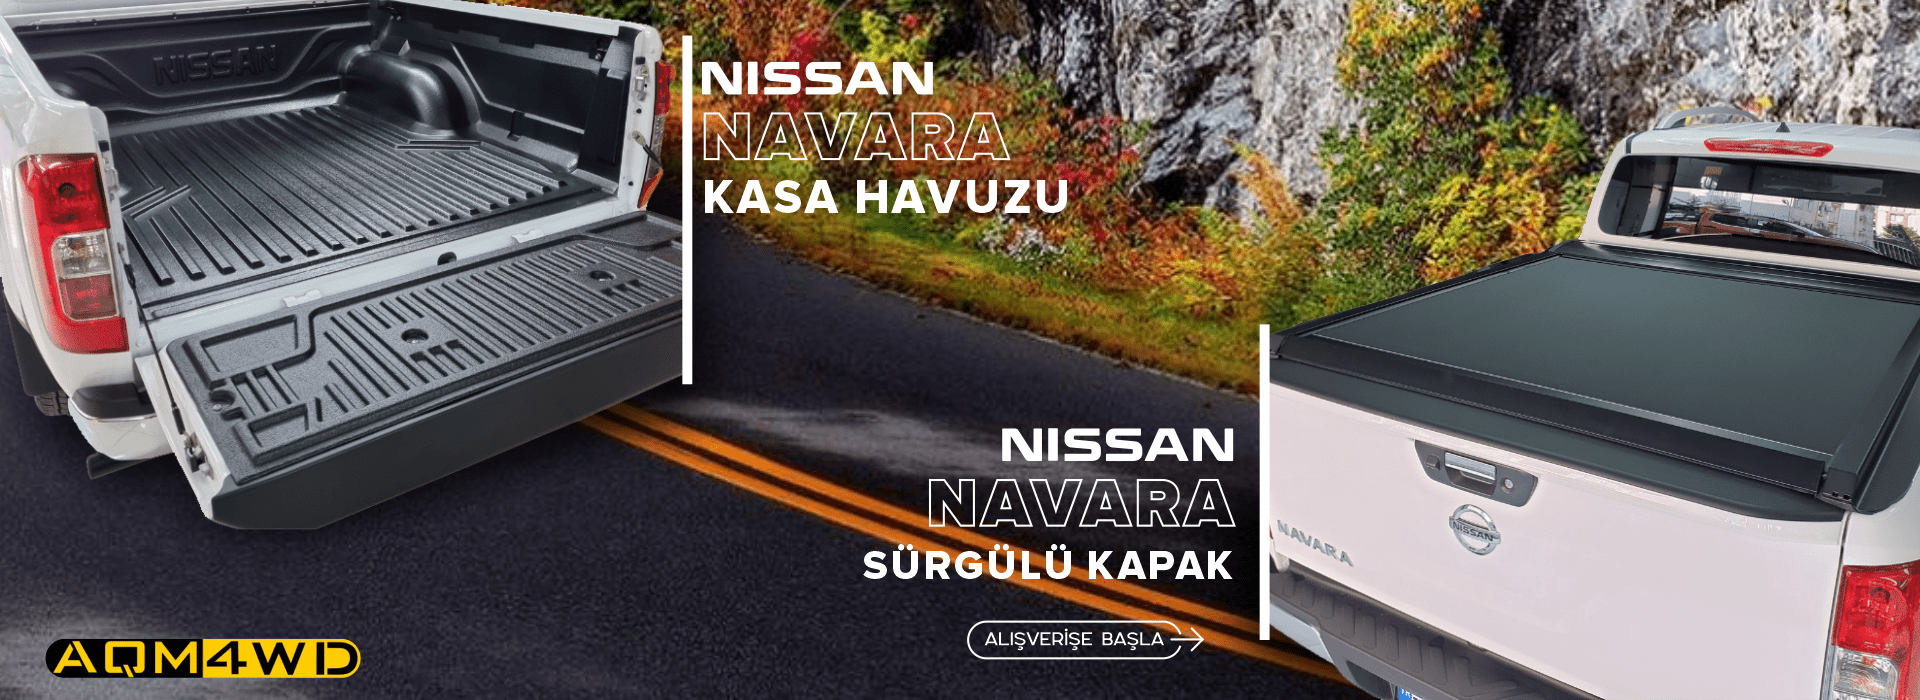 Nissan Navara Aksesuar